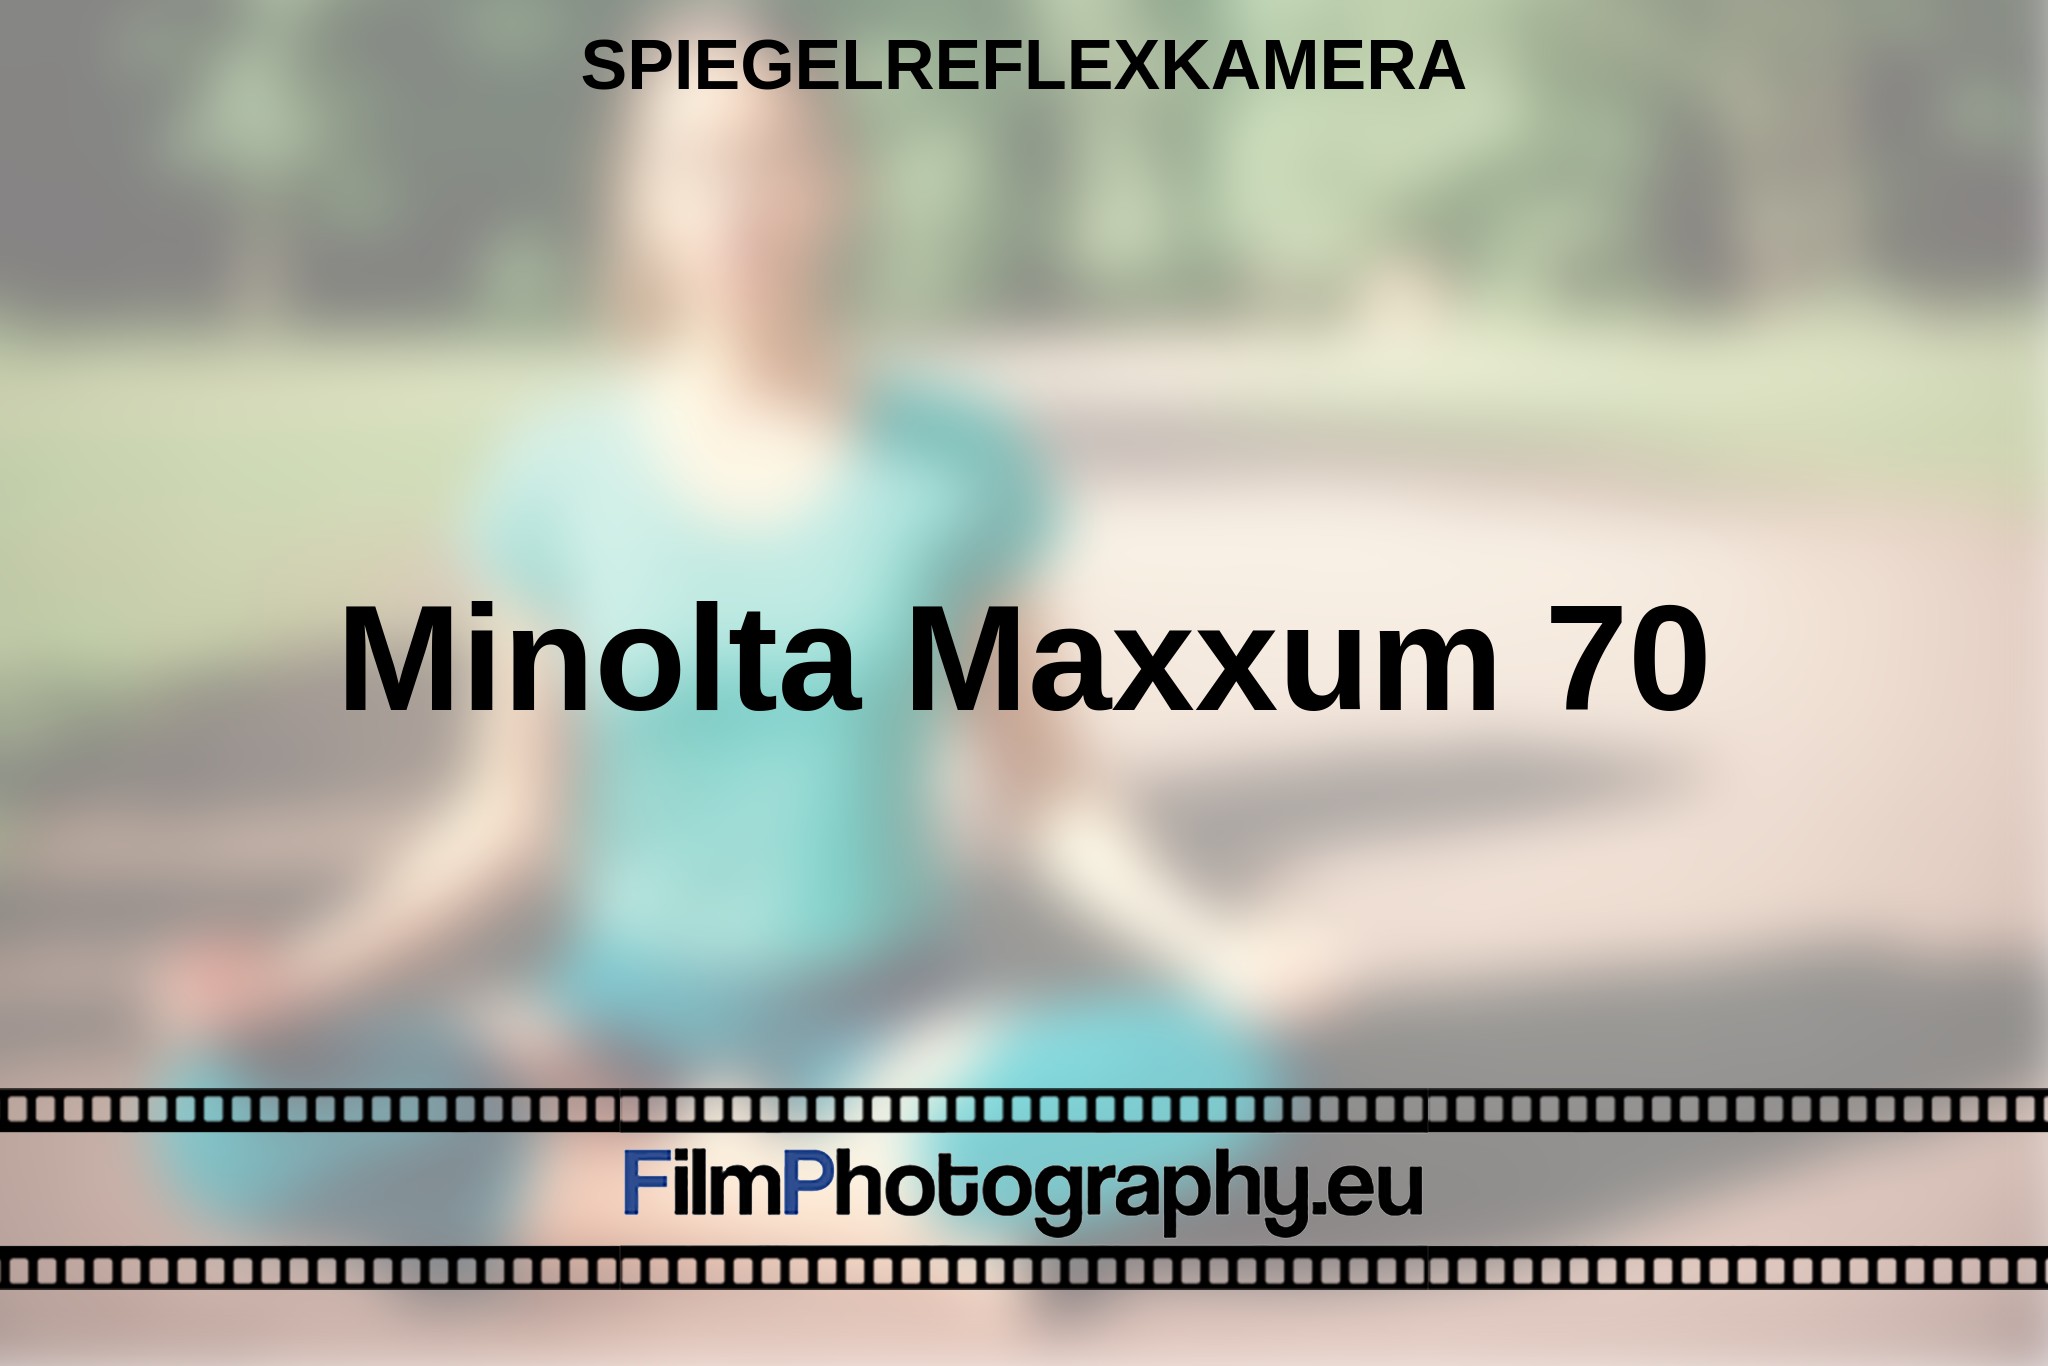 minolta-maxxum-70-spiegelreflexkamera-bnv.jpg